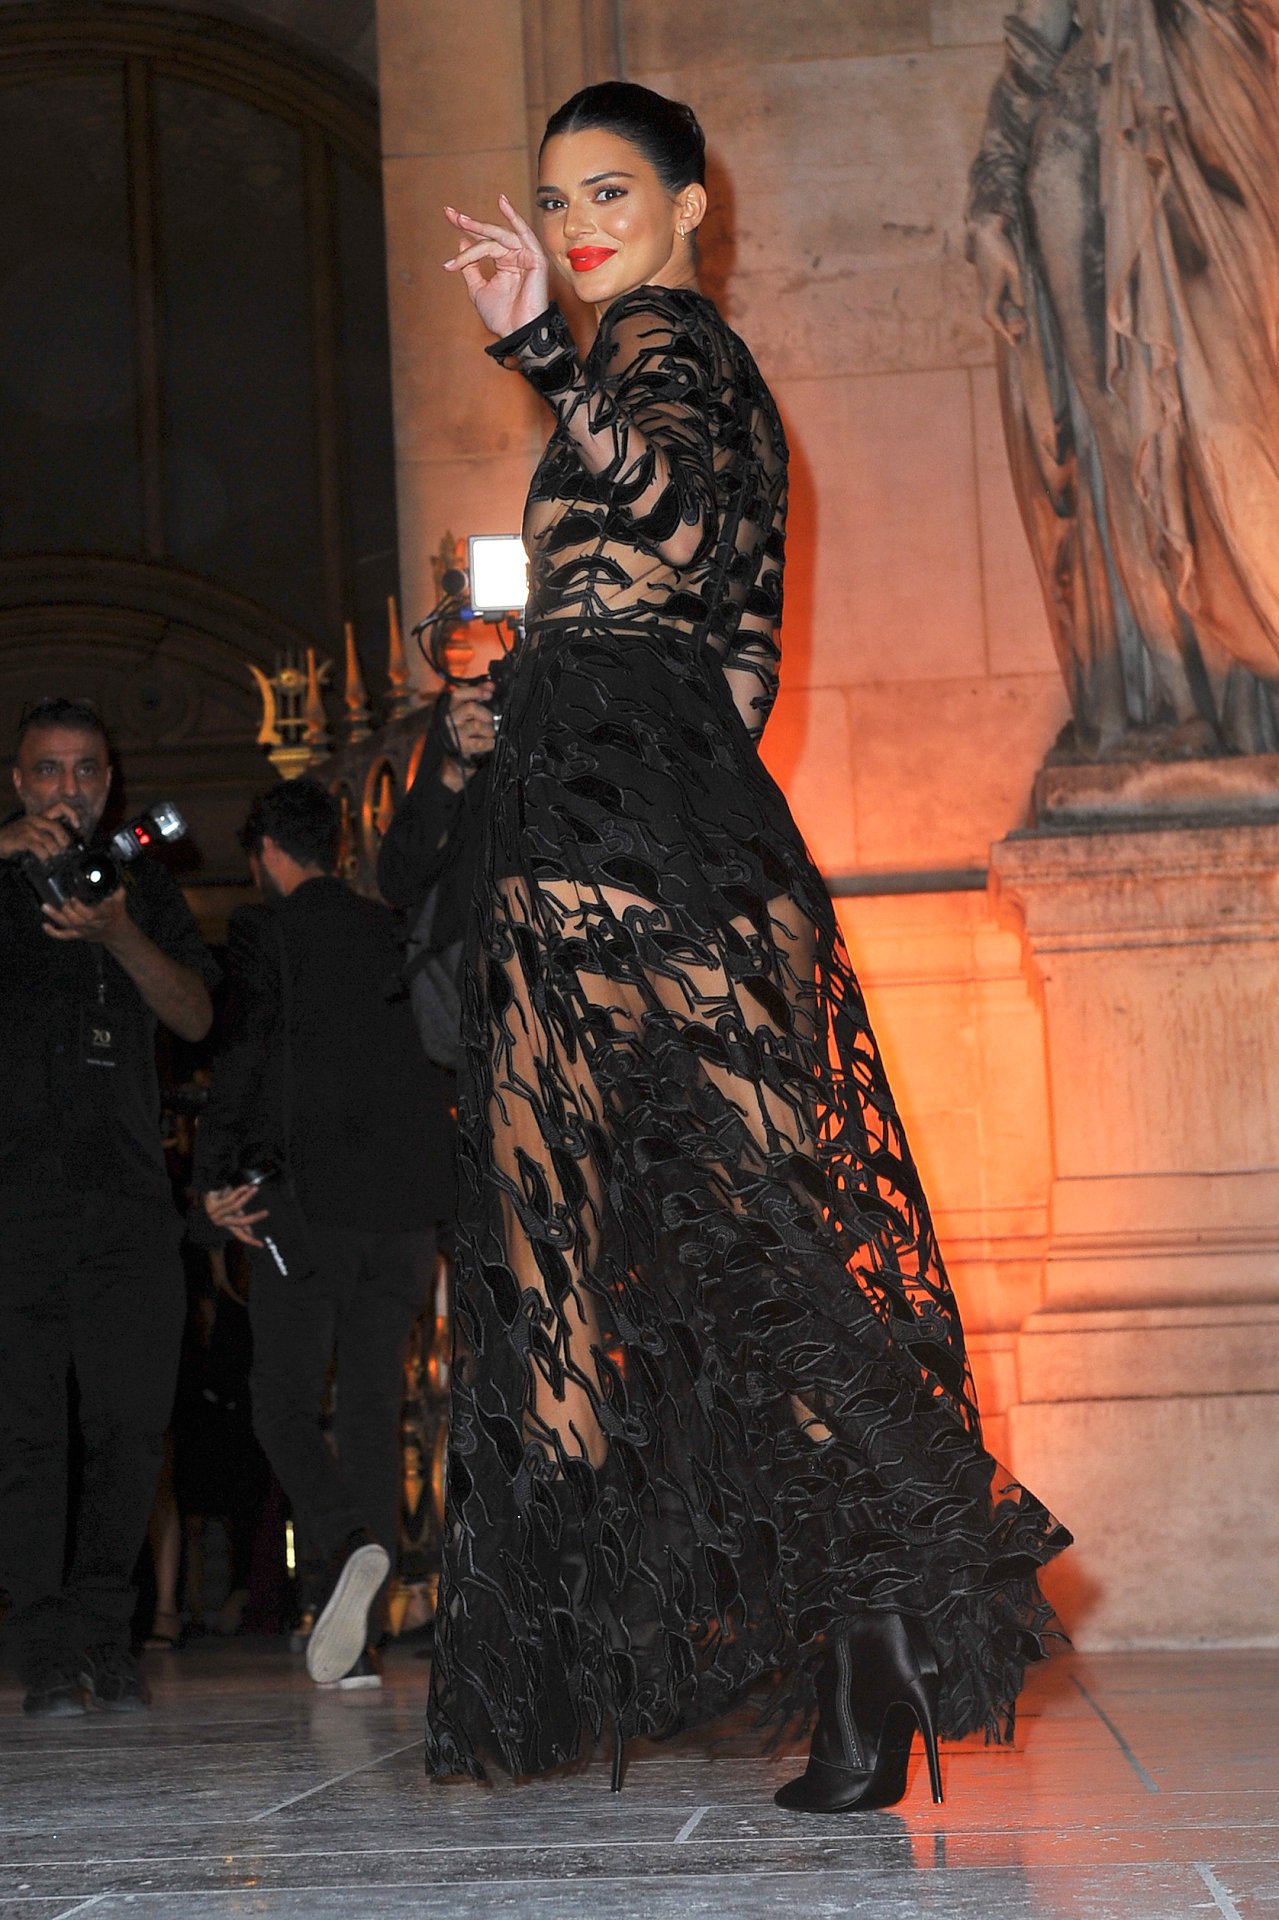 Kednall Jenner Braless In Sheer Black Dress Hot Celebs Home